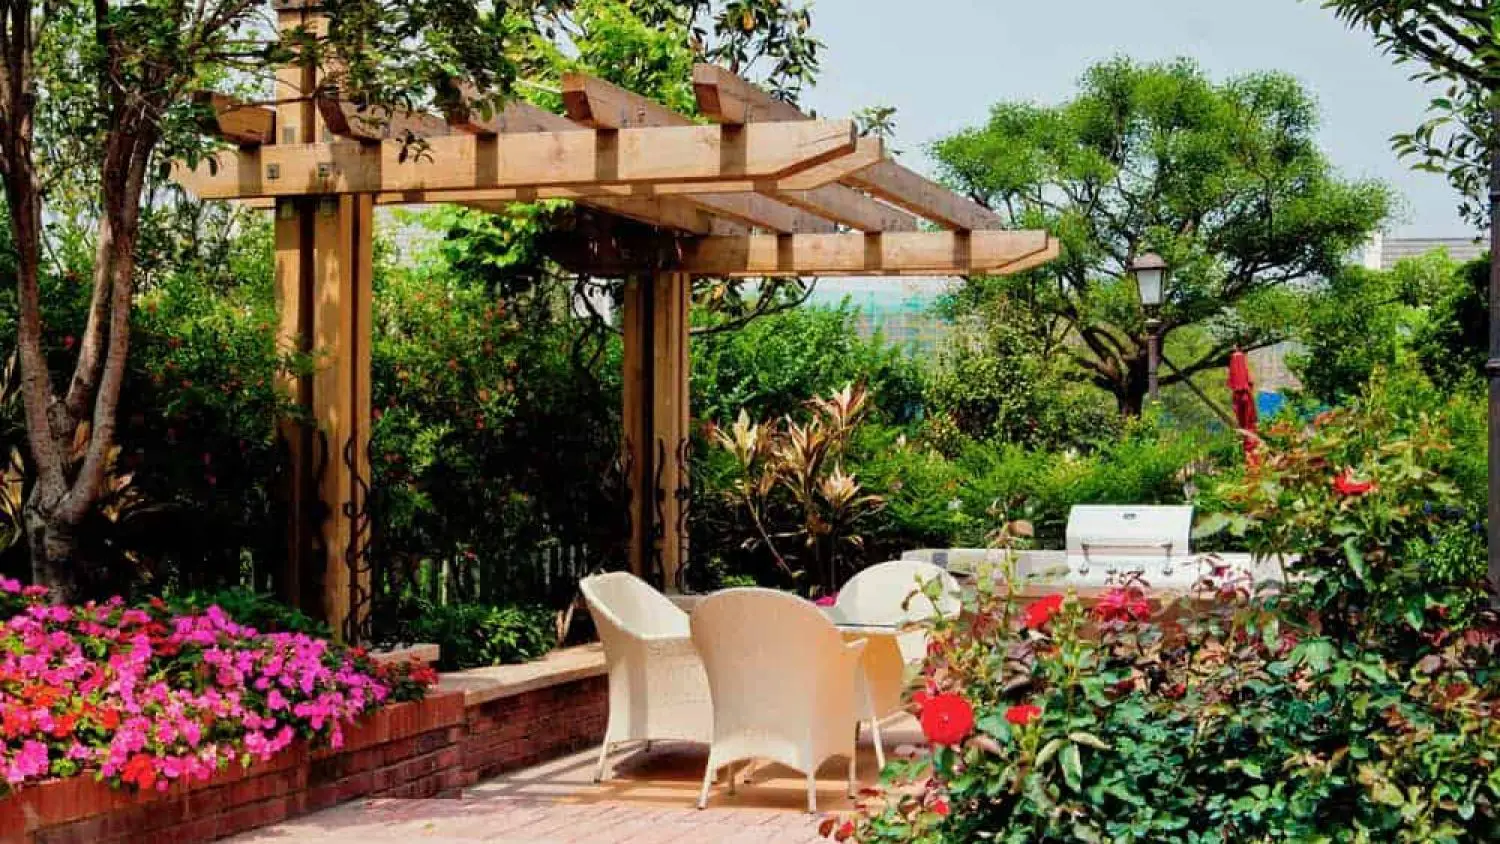 10 Creative Garden Design Ideas to Transform Your Outdoor Space